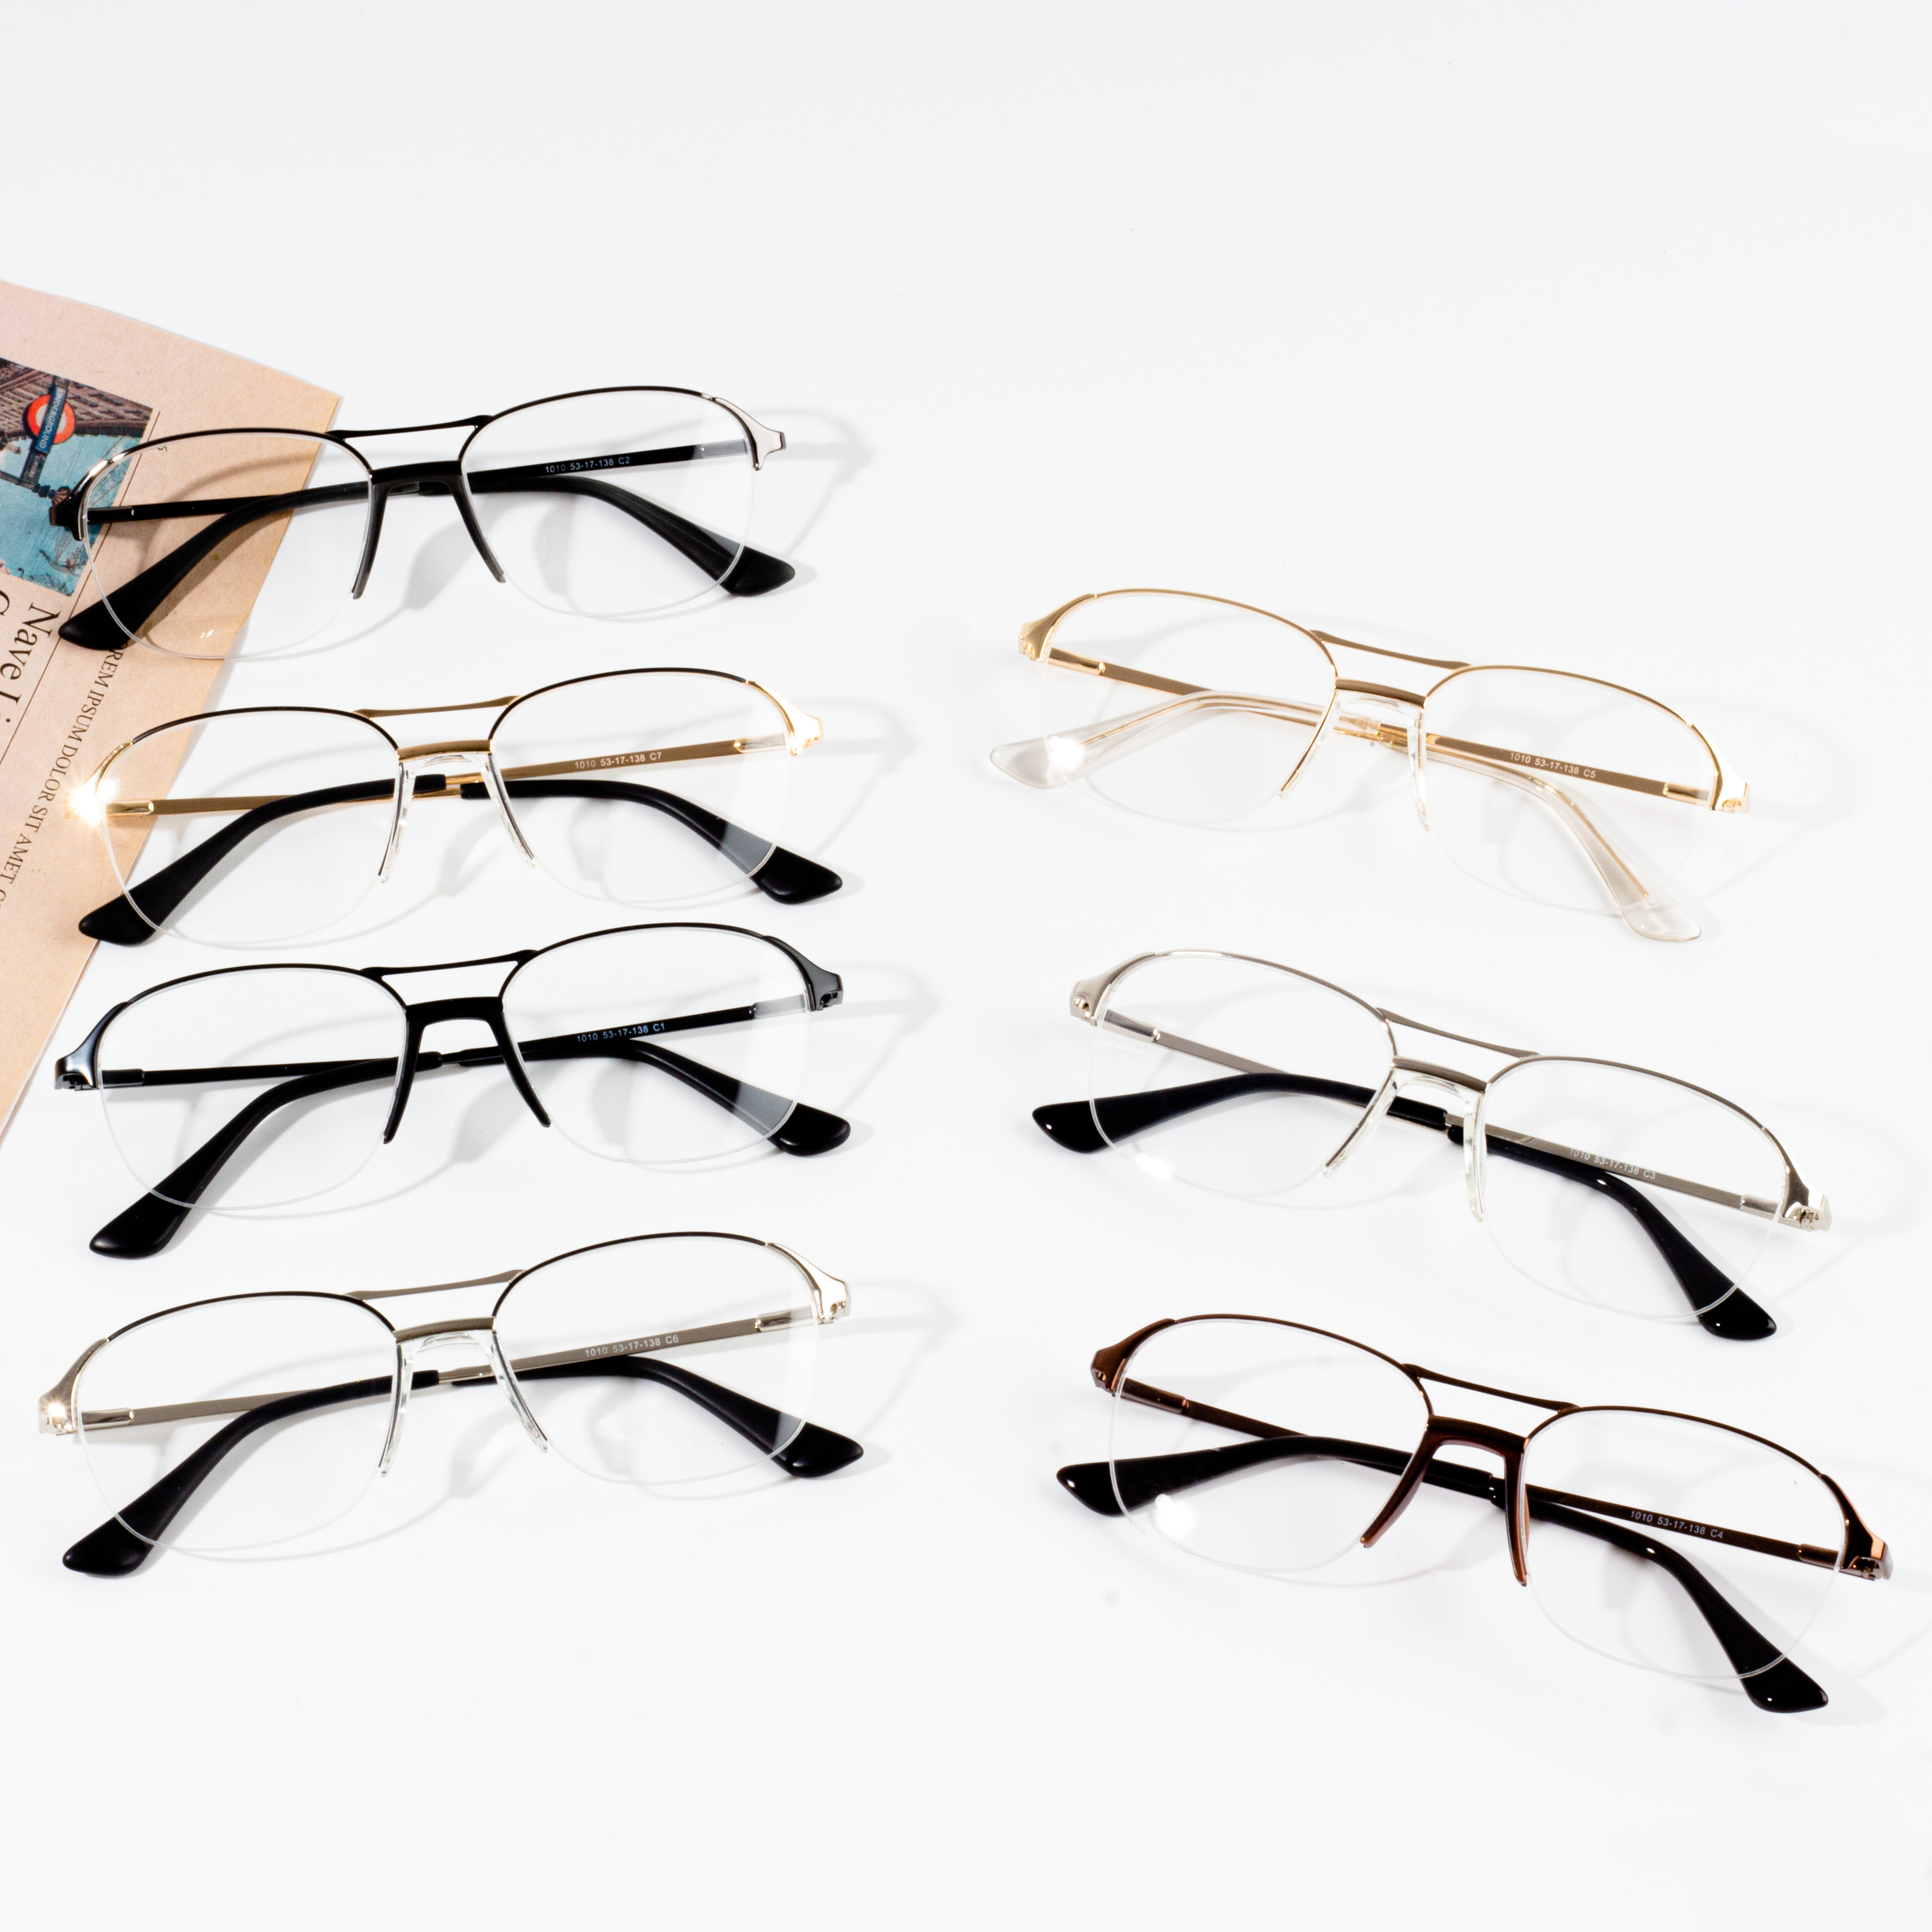 Cele mai vândute rame de ochelari pentru bărbați de pe piață